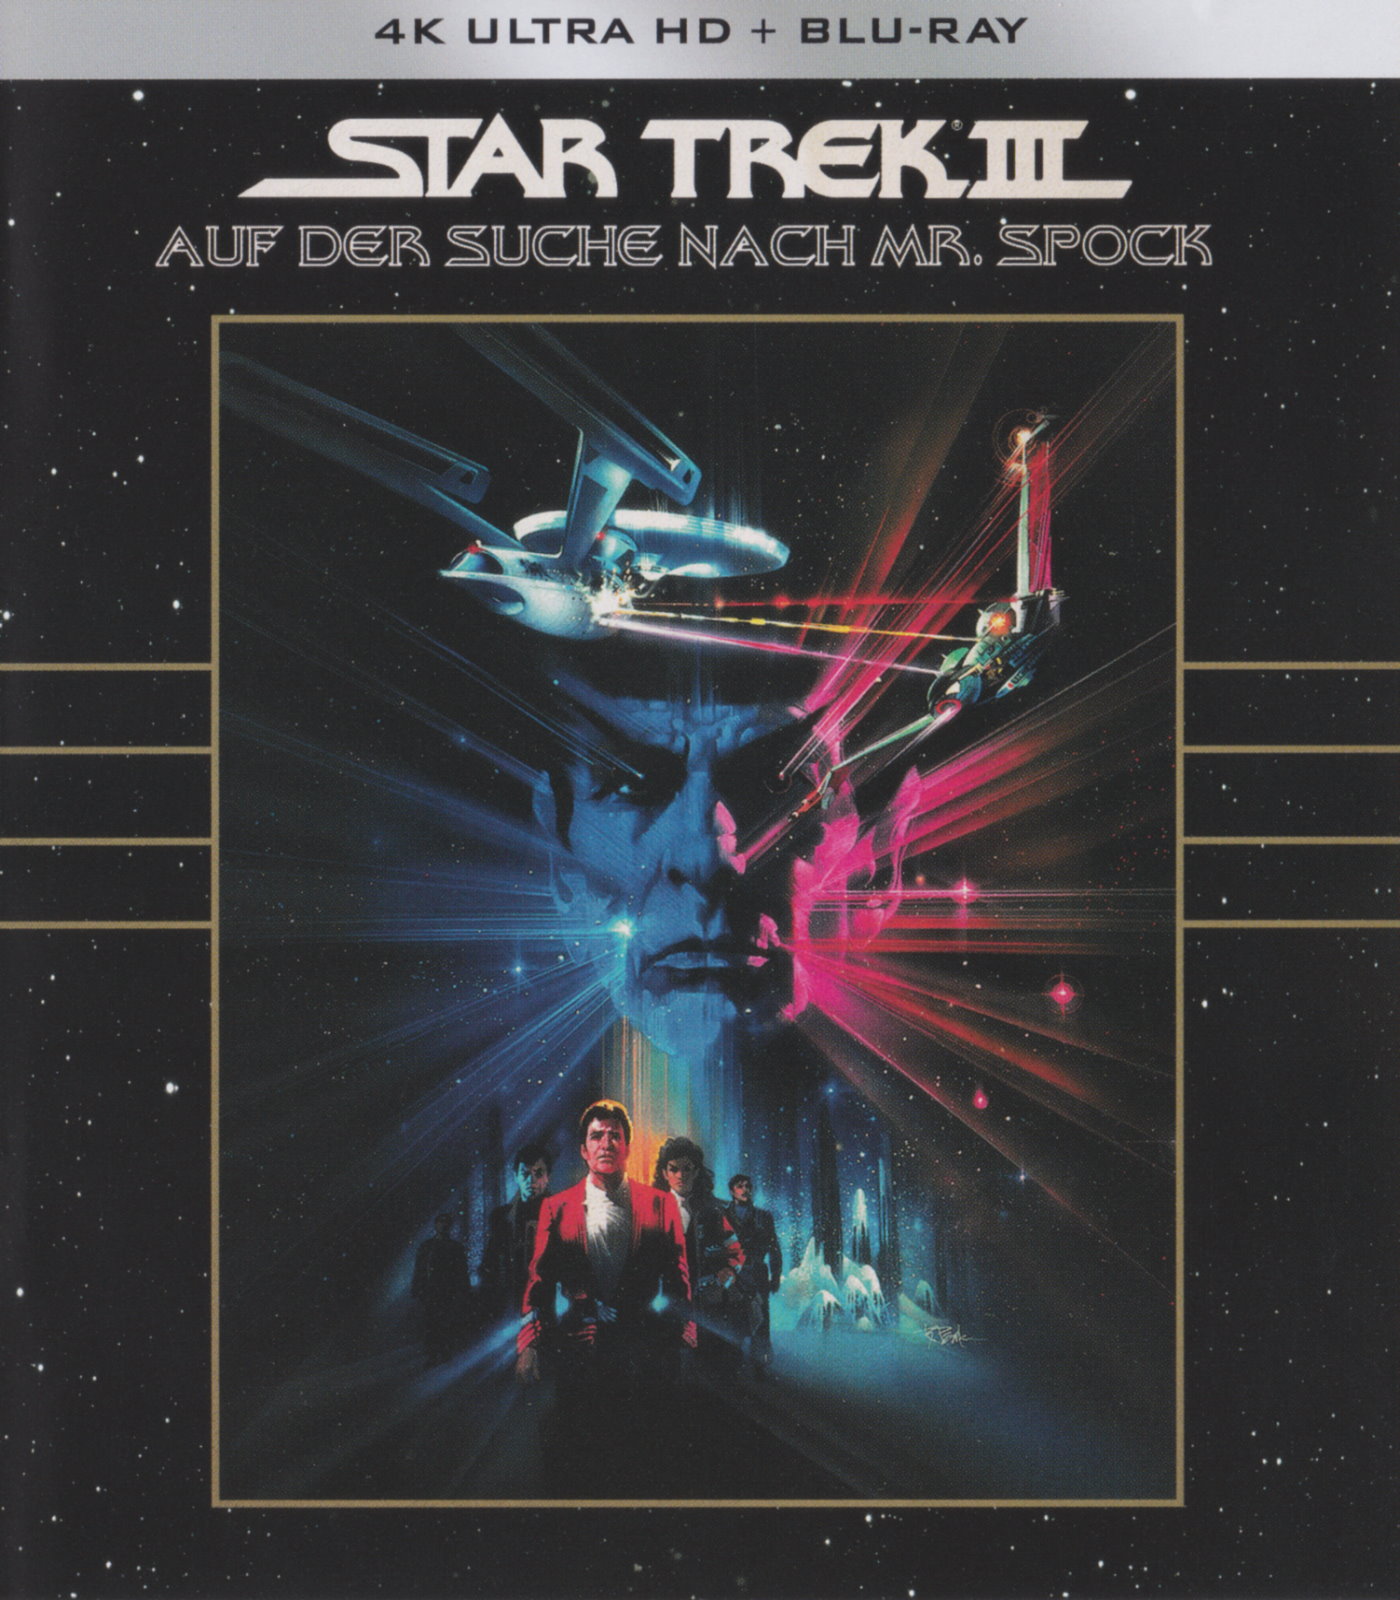 Cover - Star Trek III - Auf der Suche nach Mr. Spock.jpg